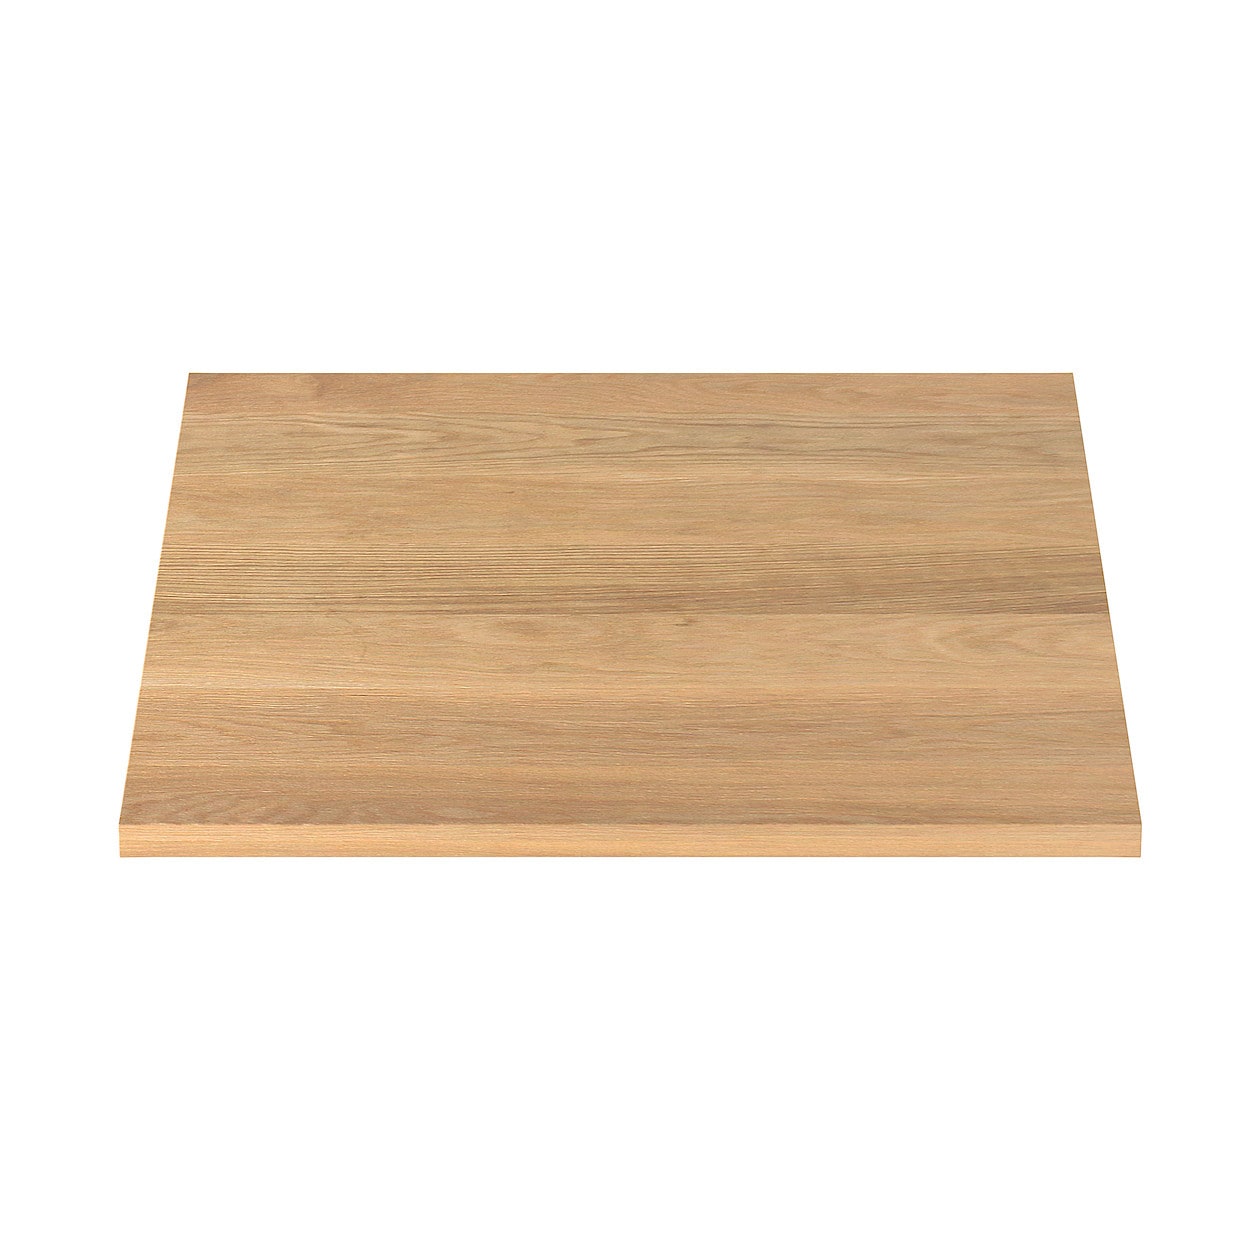 木製テーブル天板 オーク材 幅８０ 奥行８０ｃｍ 板と脚でできた木製テーブルシリーズ 通販 無印良品